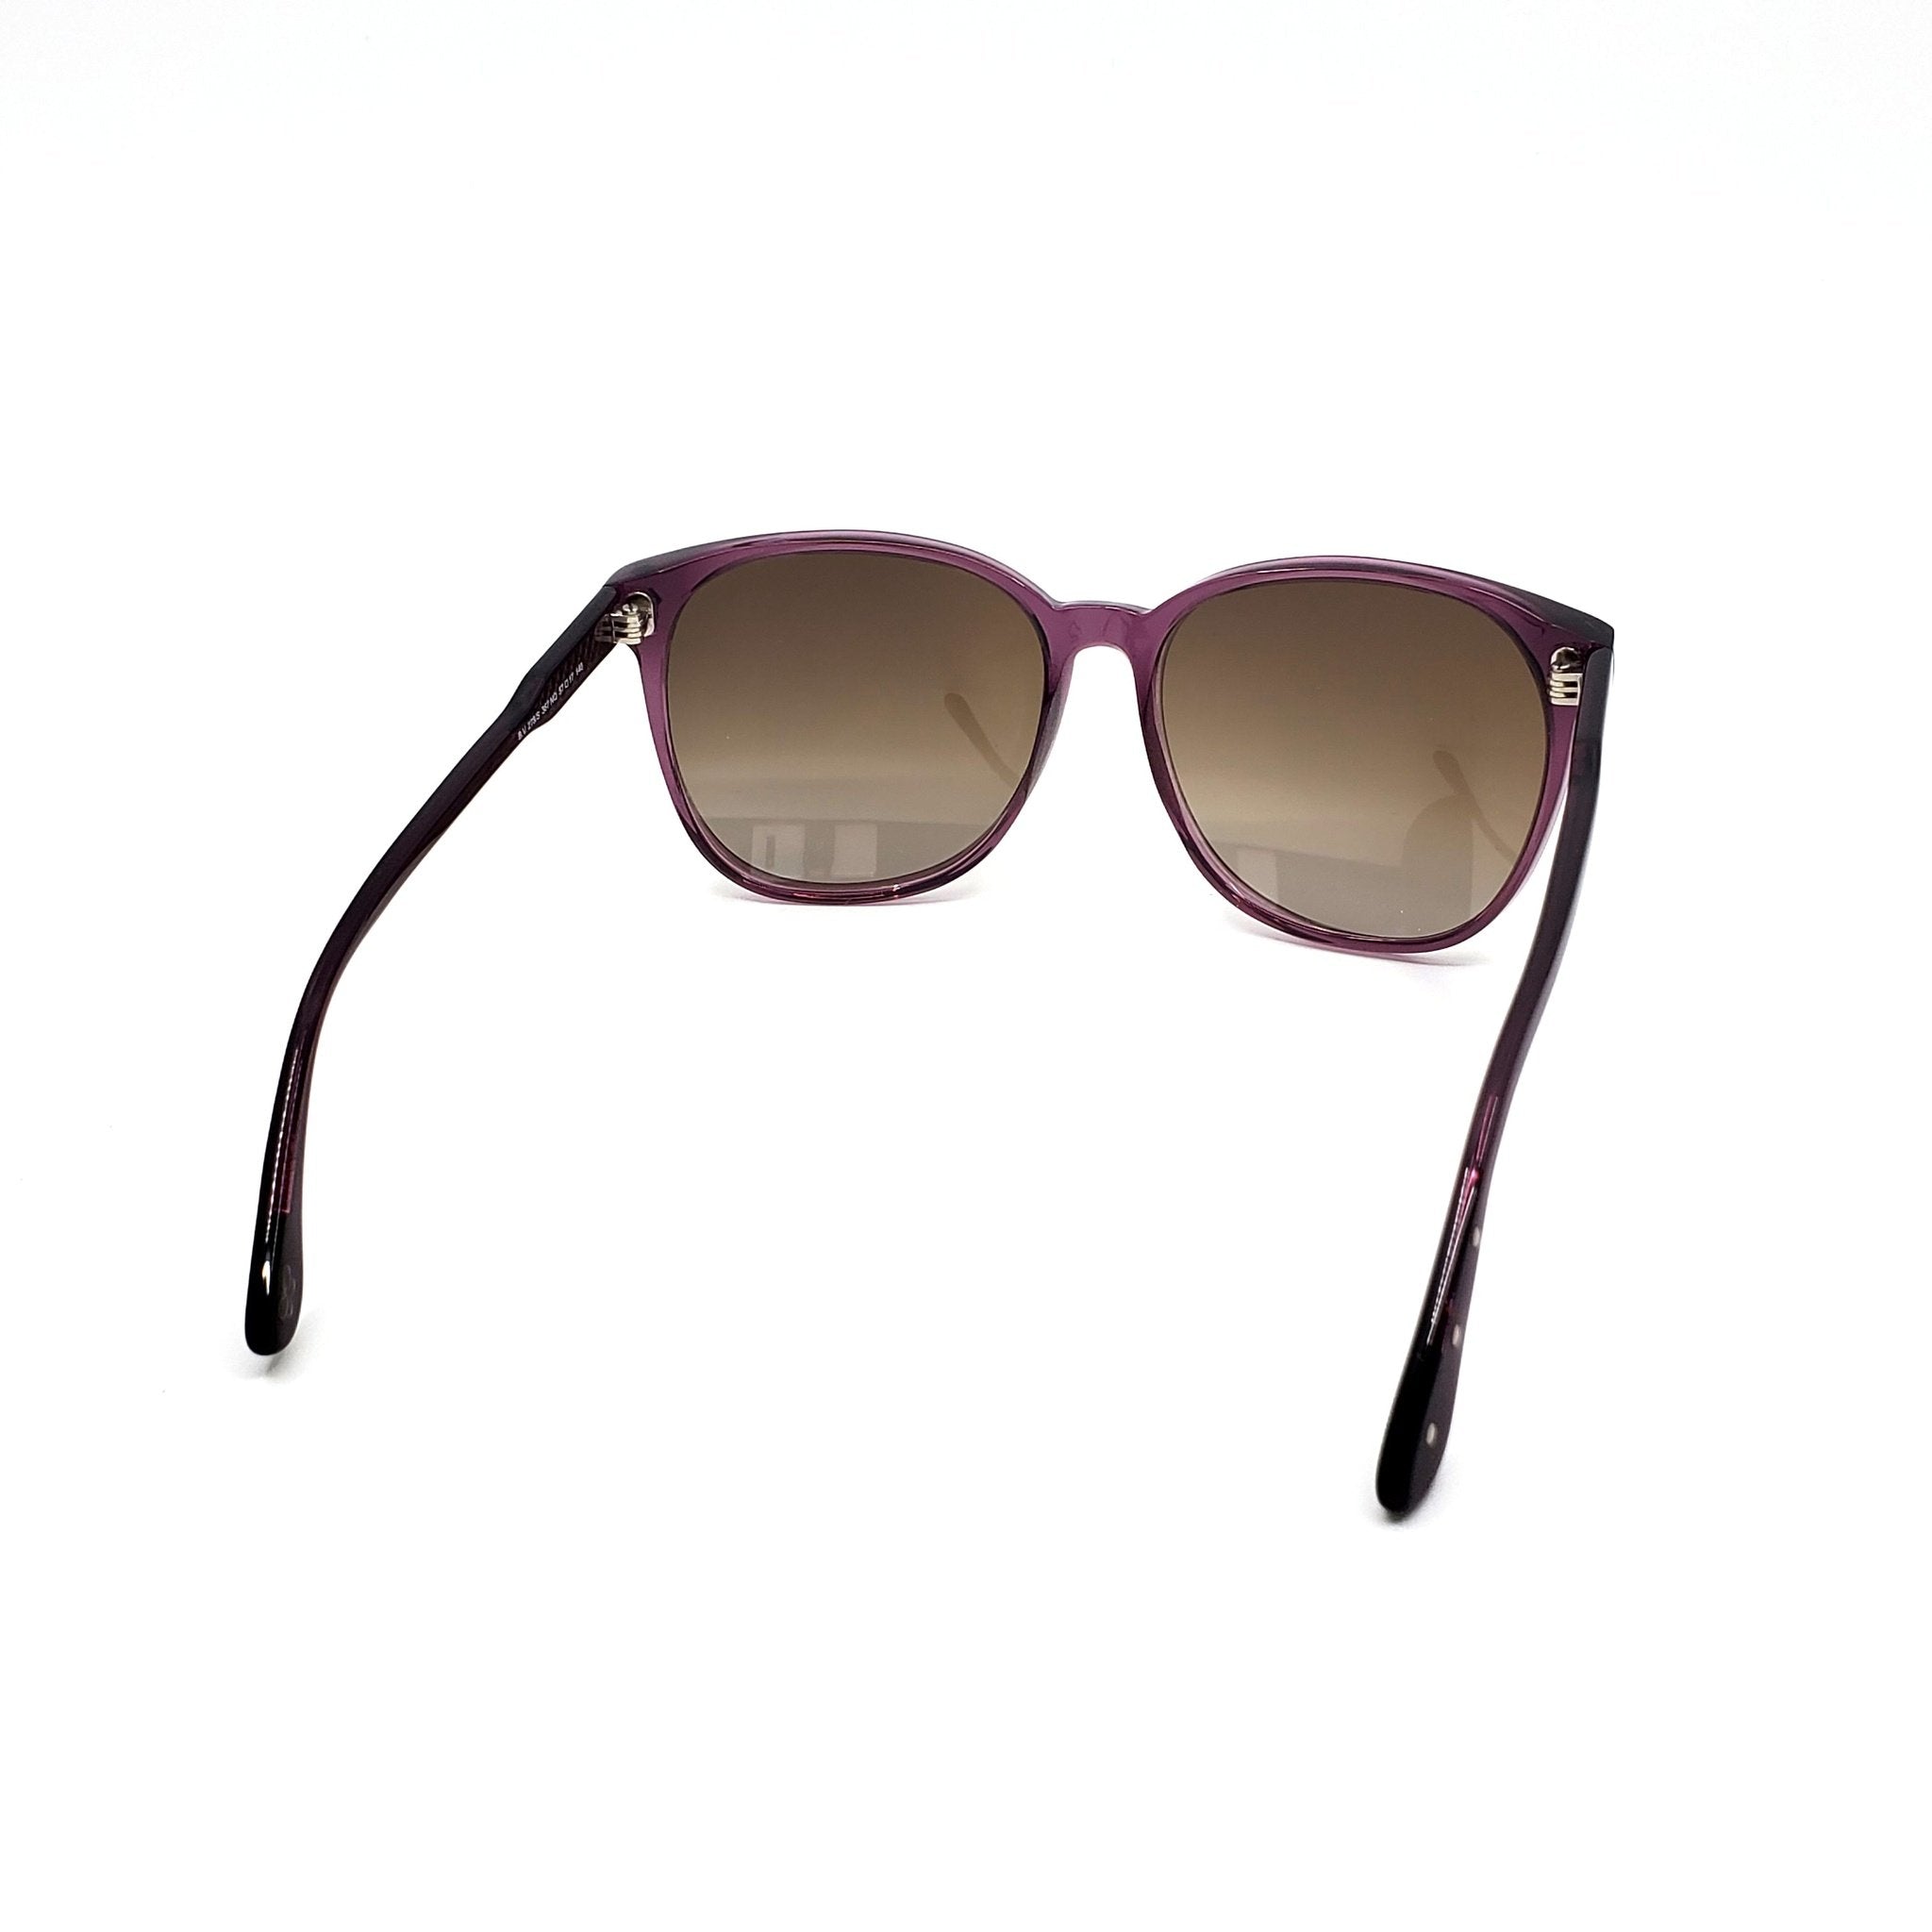 Bottega Veneta Sunglasses - BV278S